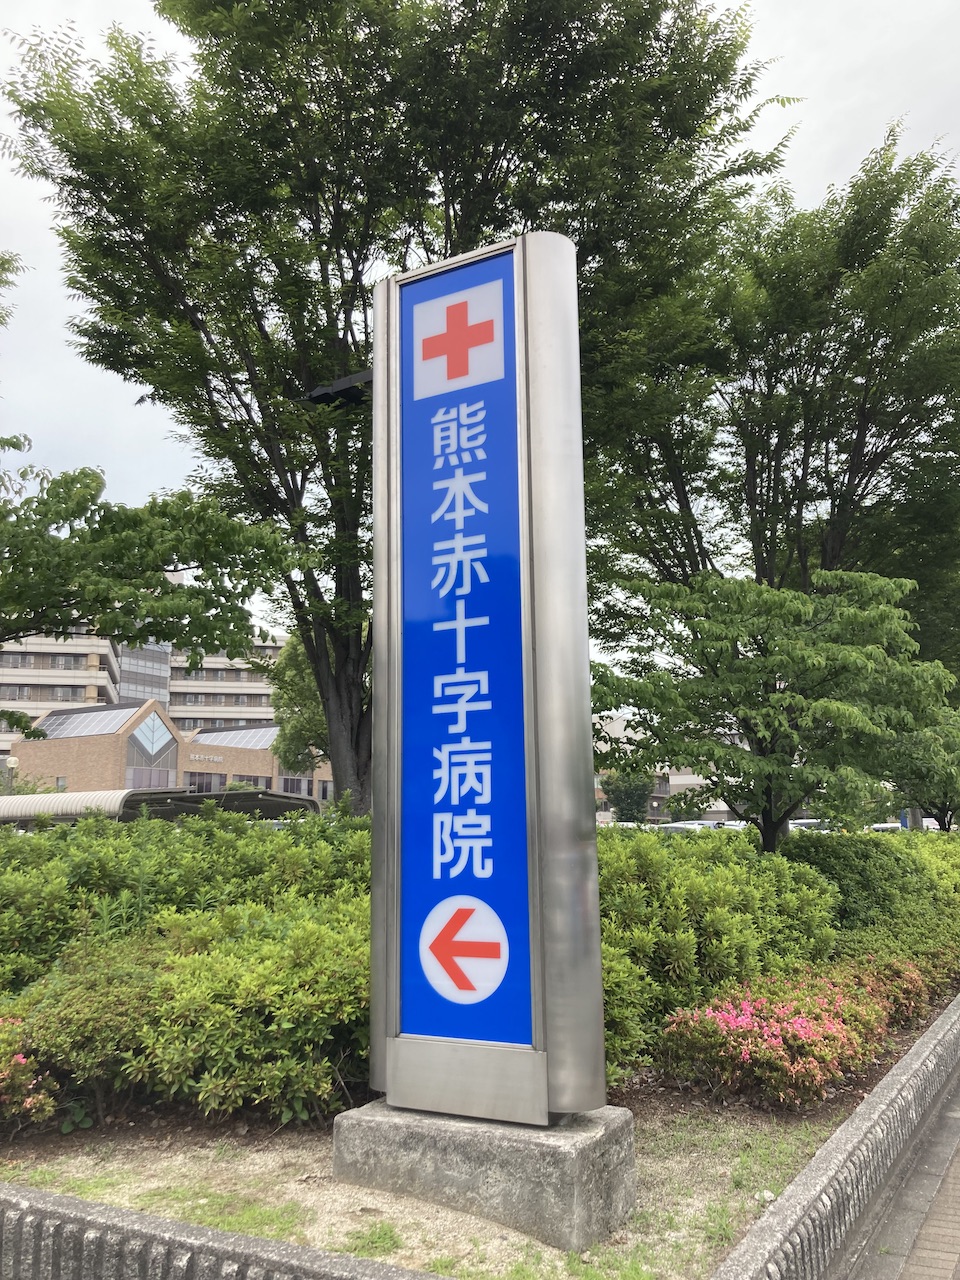 熊本赤十字病院様、広告塔